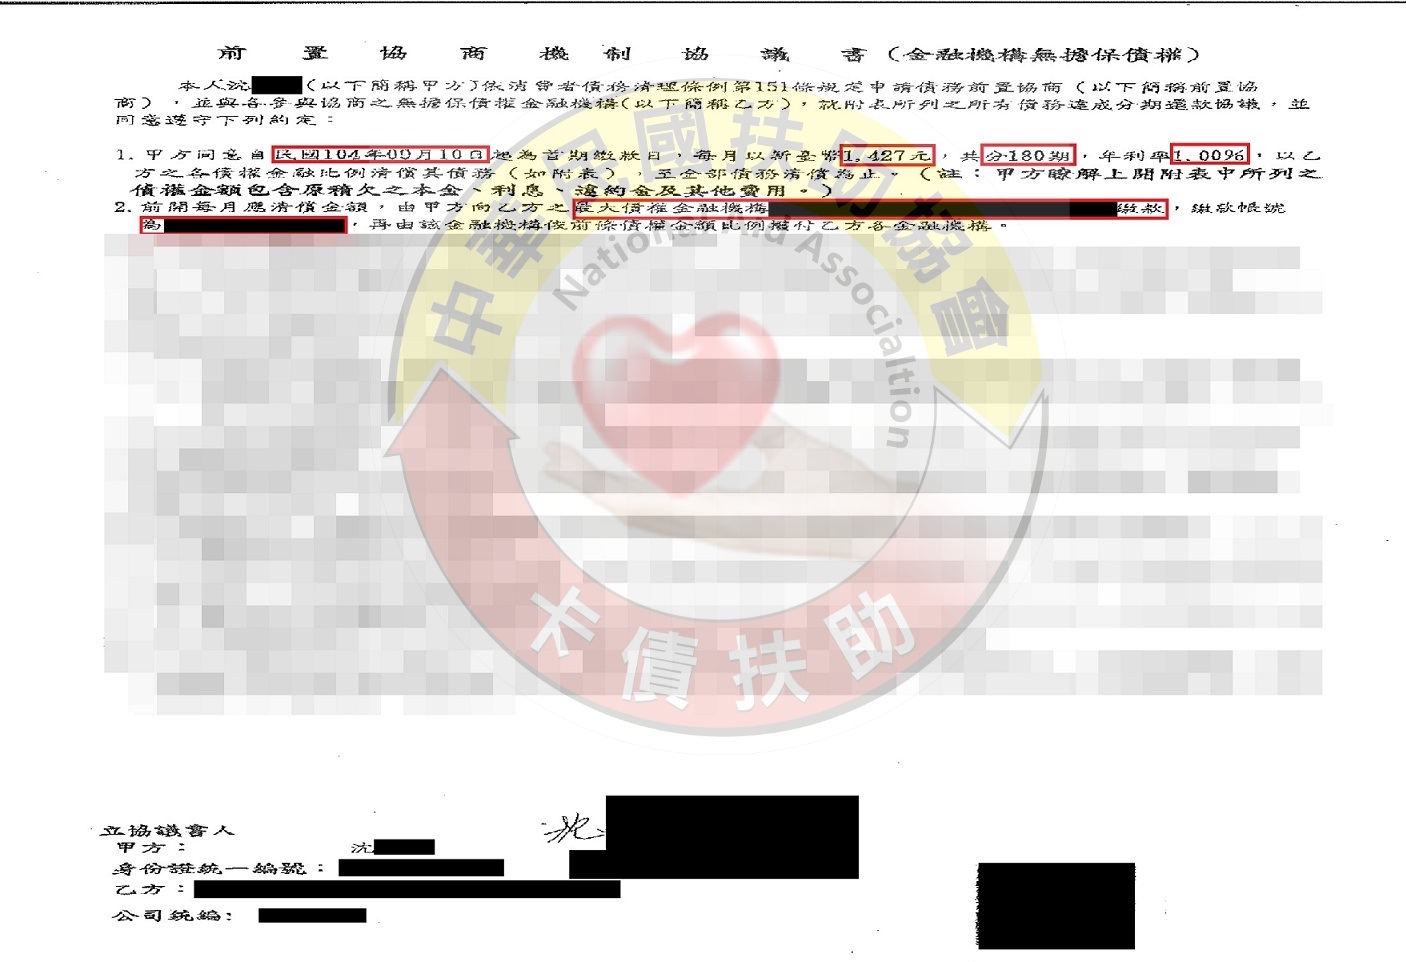 台北沈小姐-協商成功依180期1%月付1,427元